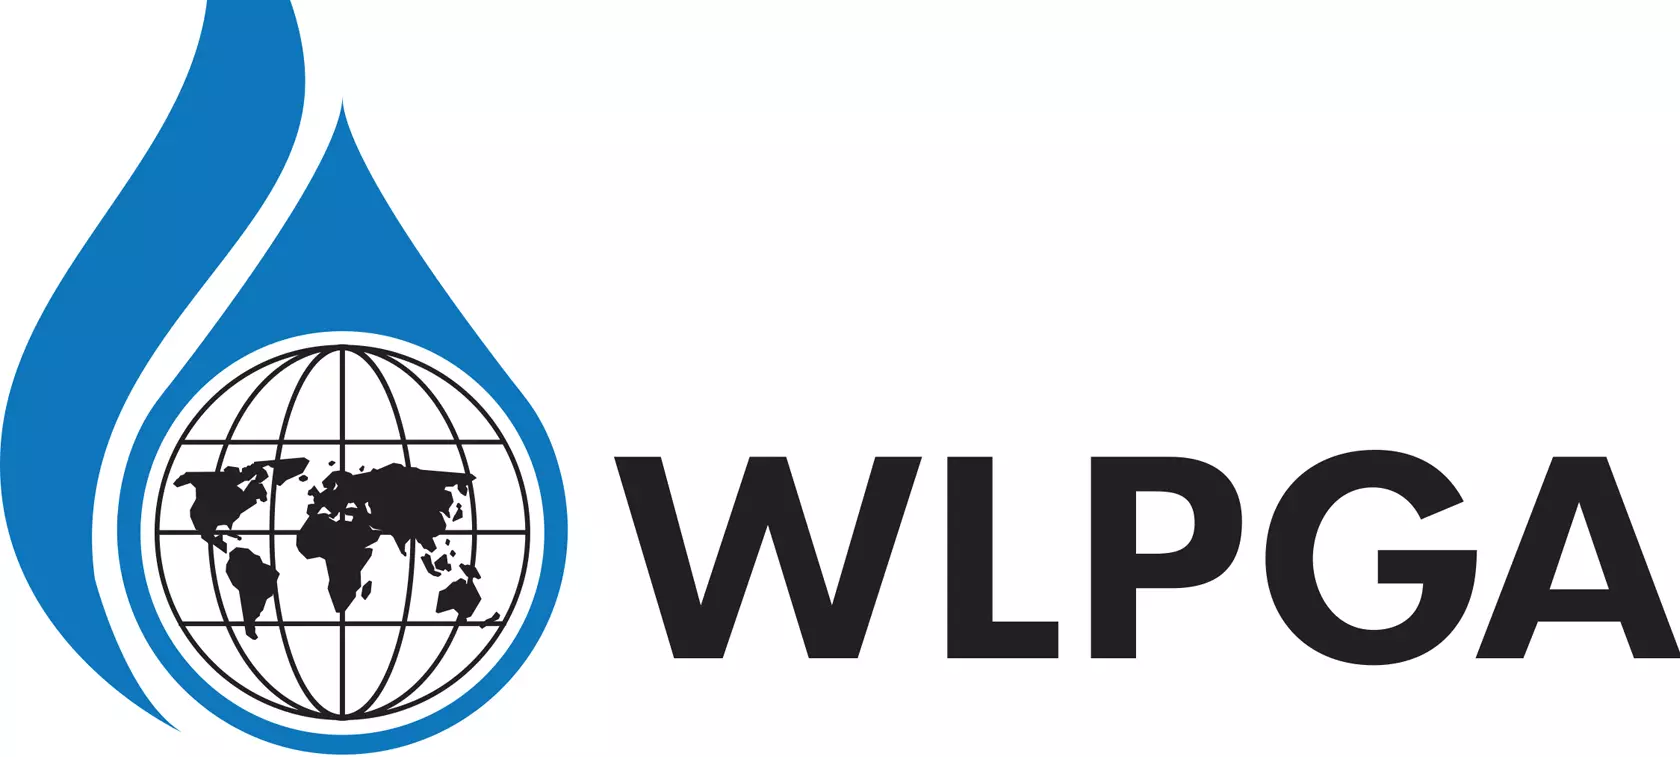 WLPGA odświeża logo